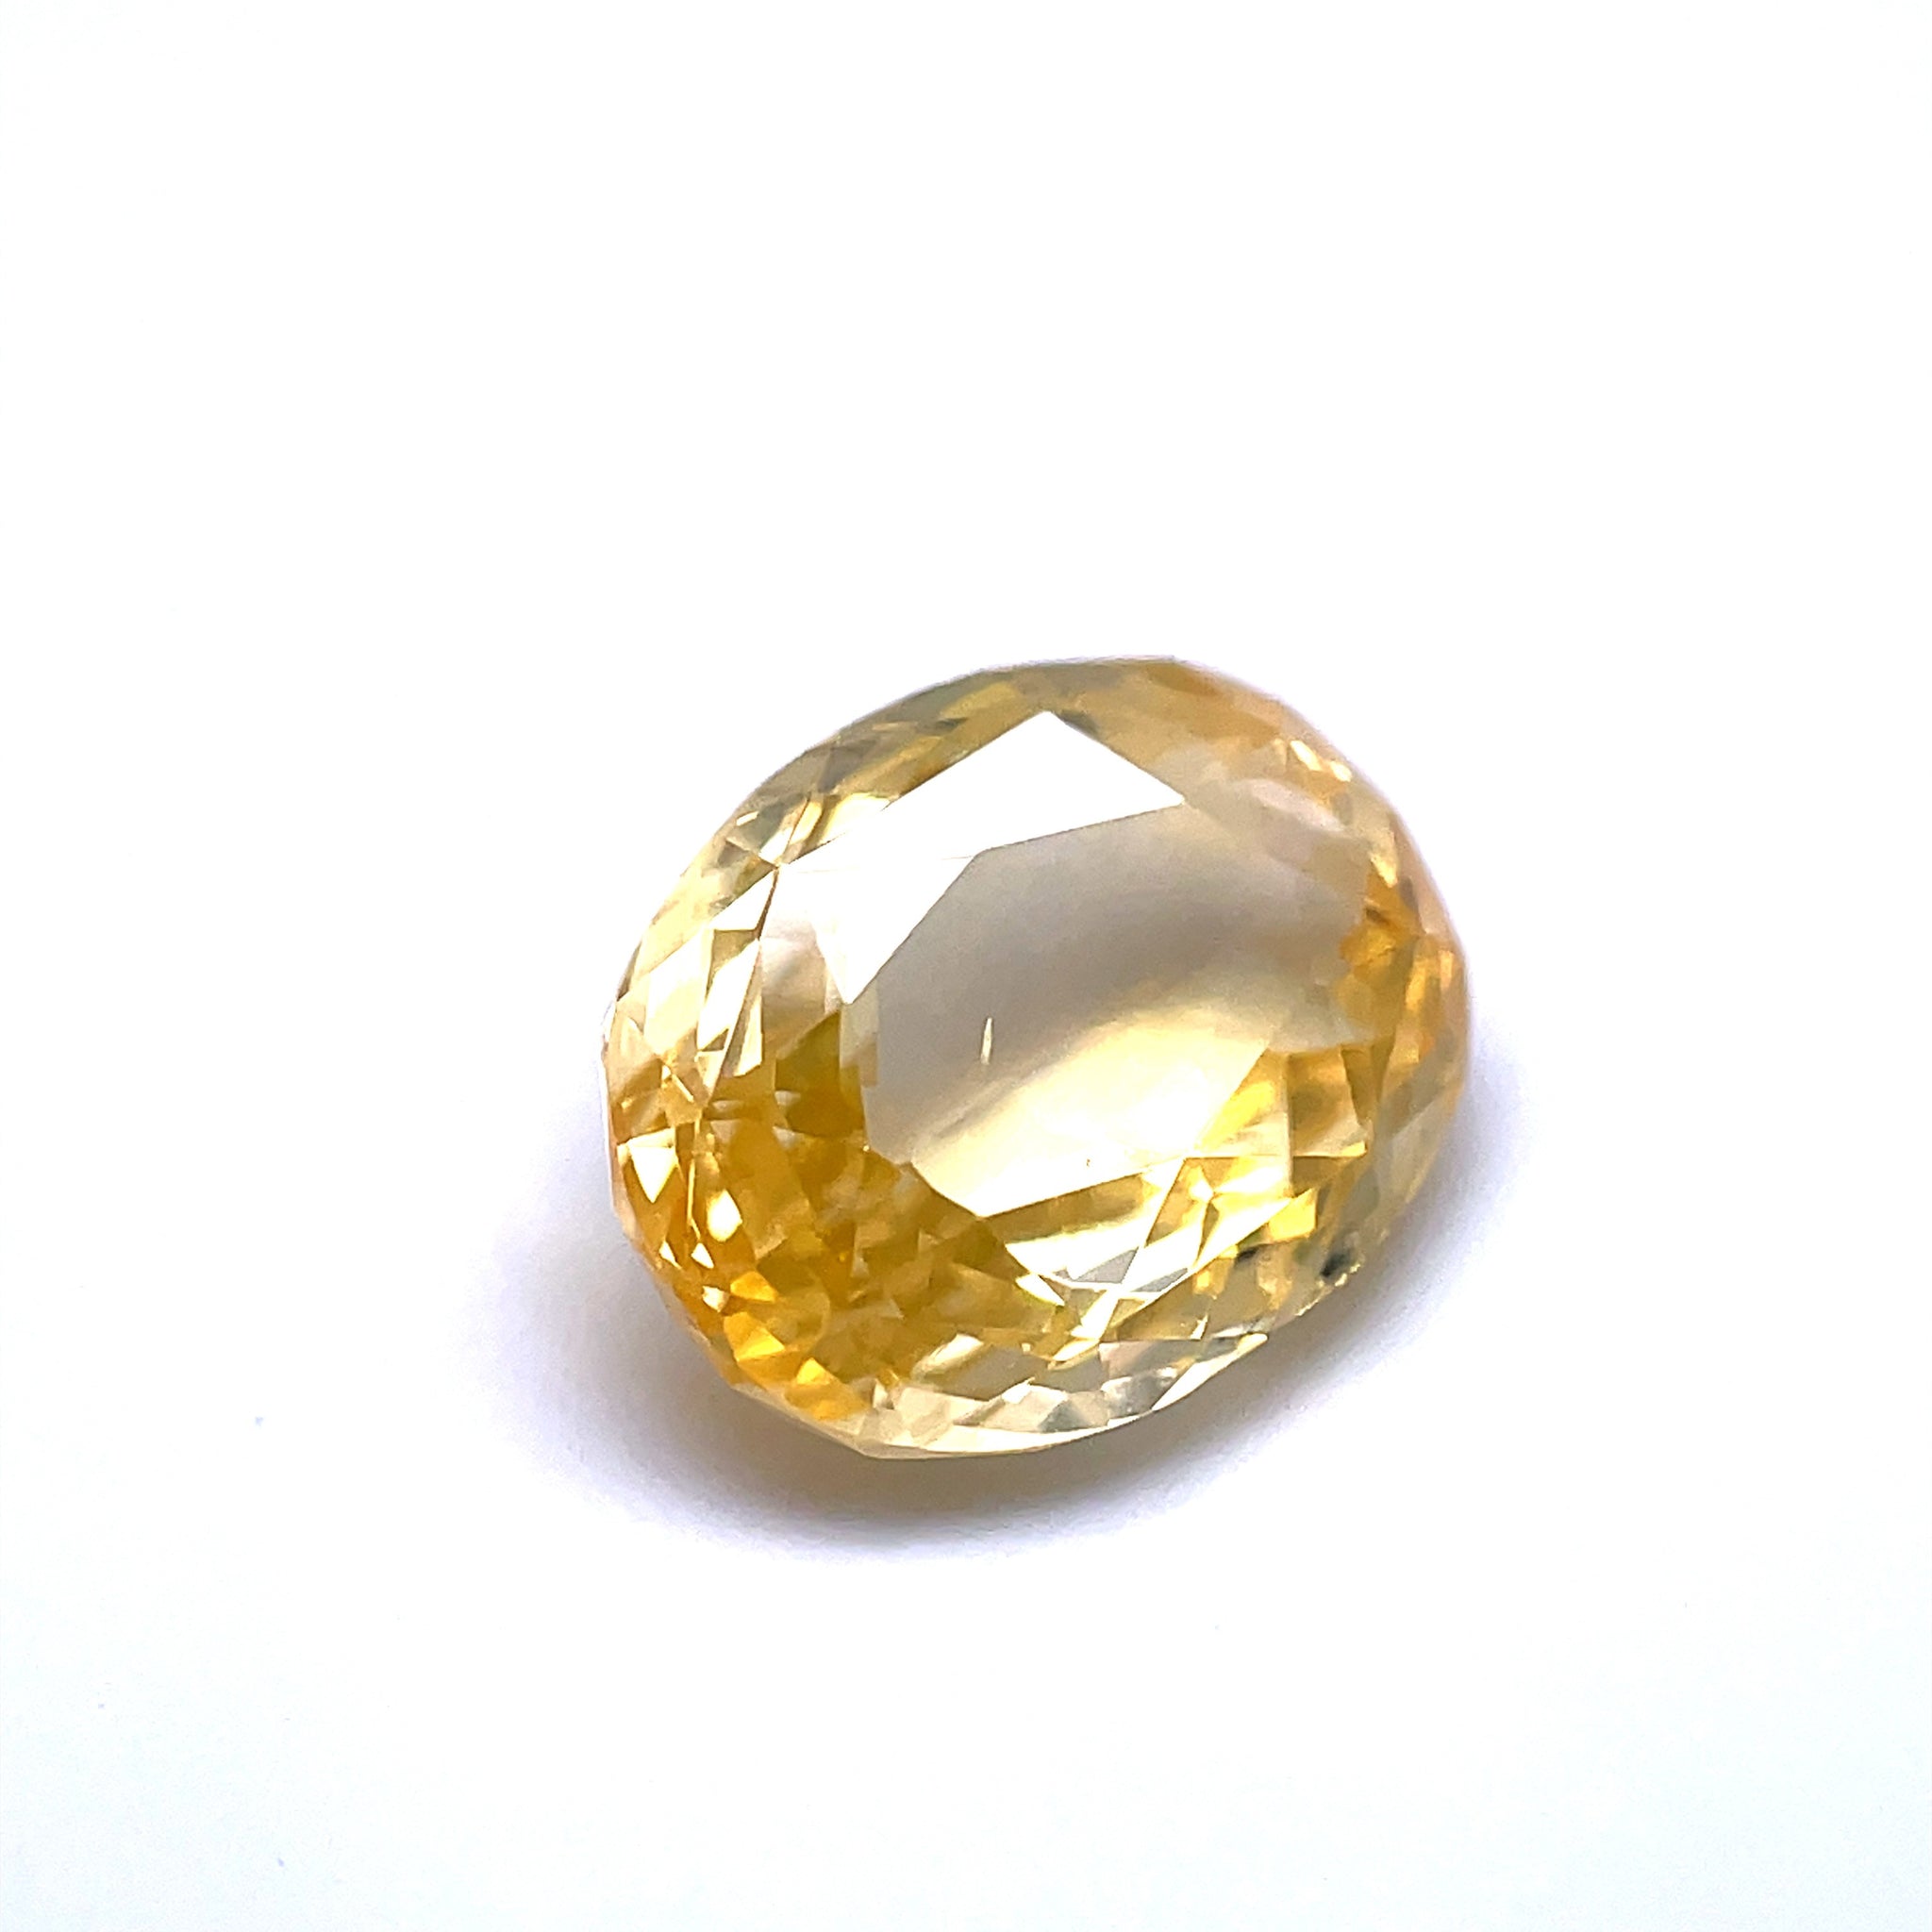 Medium to dark yellow Oval Sapphire 3.64 CT